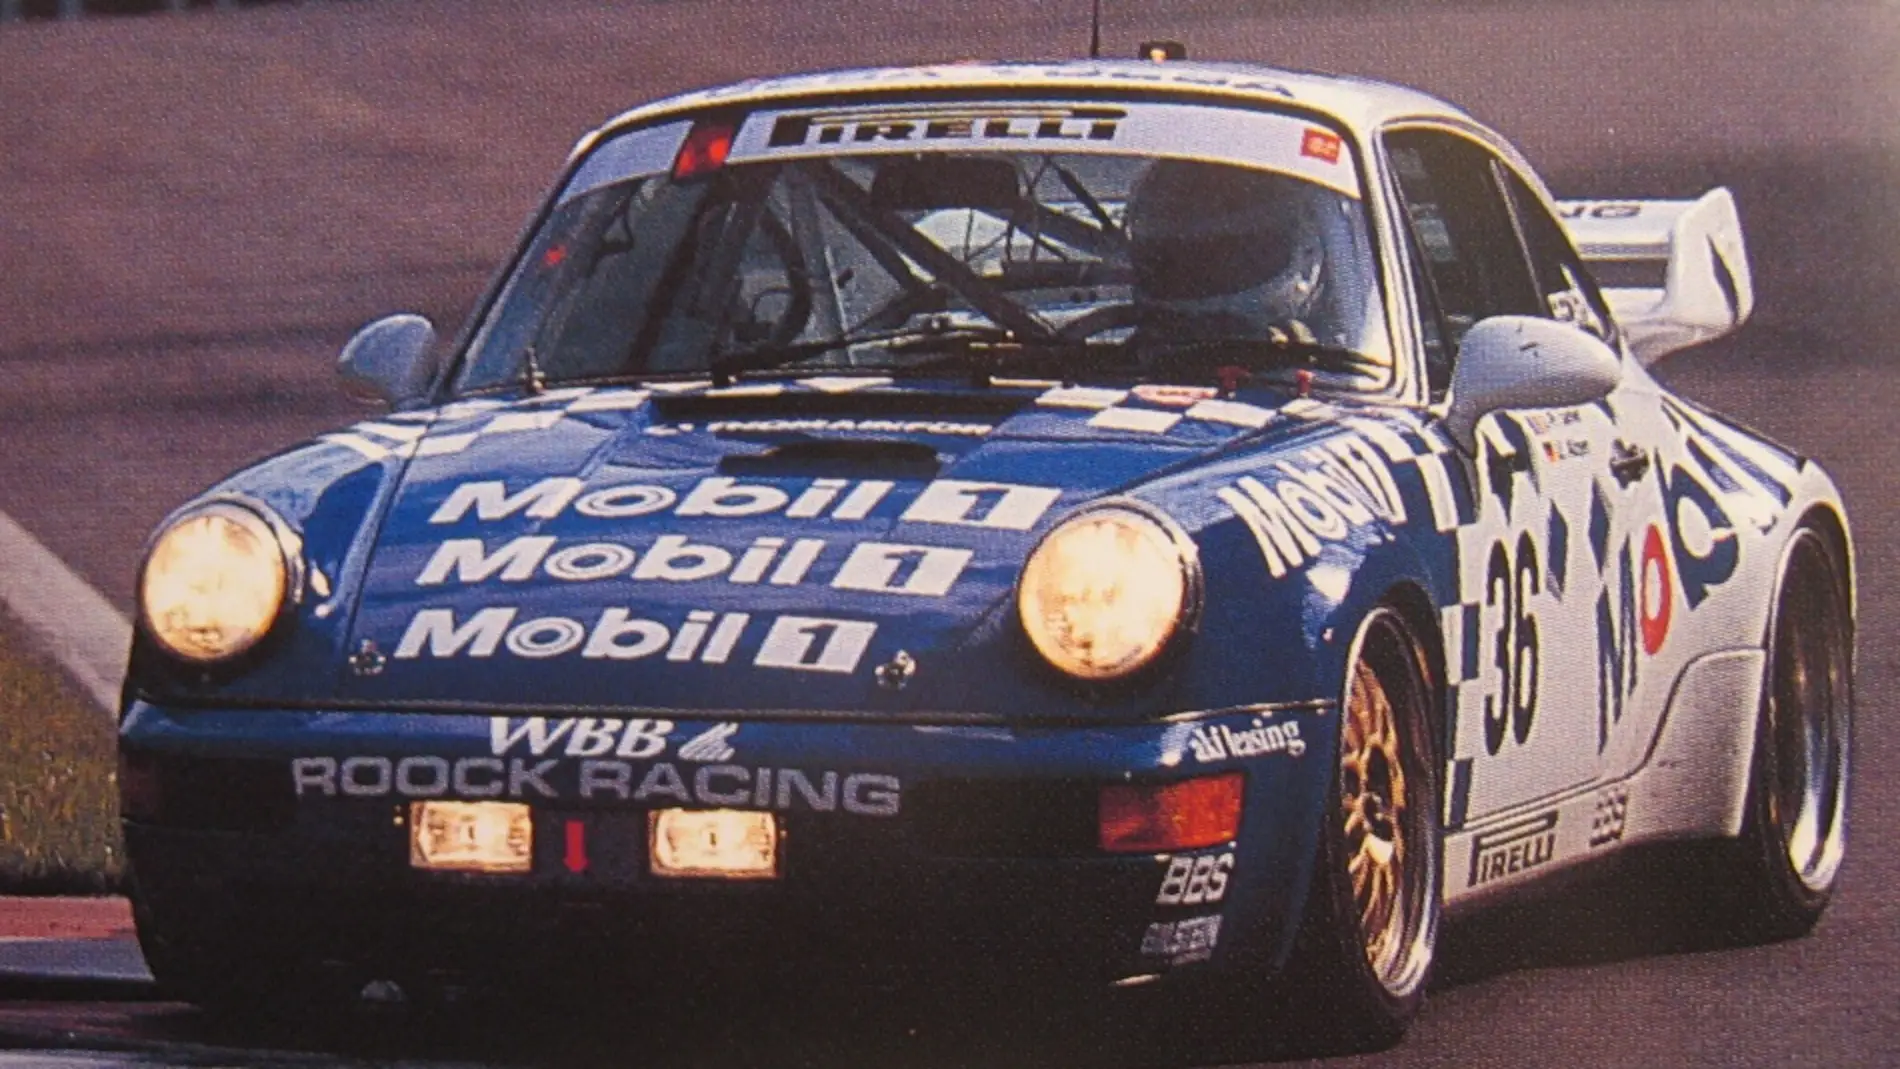 Porsche Roock Racing 1993 Spa 24h 